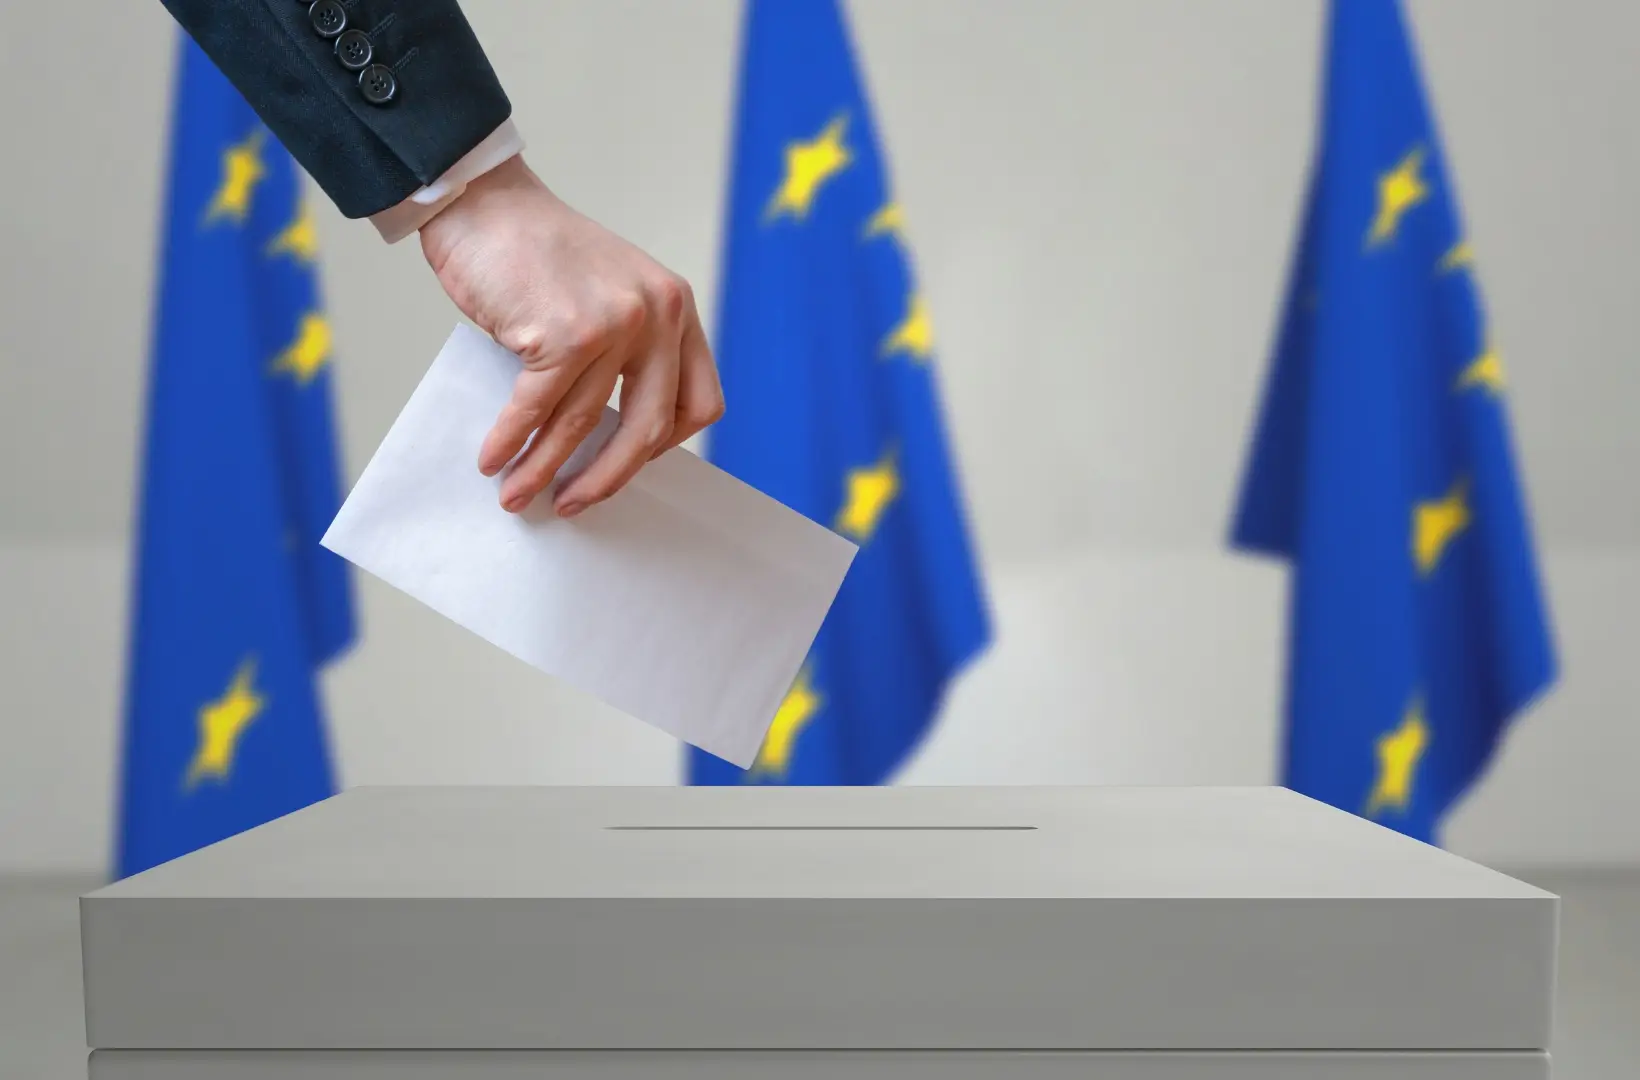 Eleições Europeias: sondagem coloca extrema-direita como terceira força política